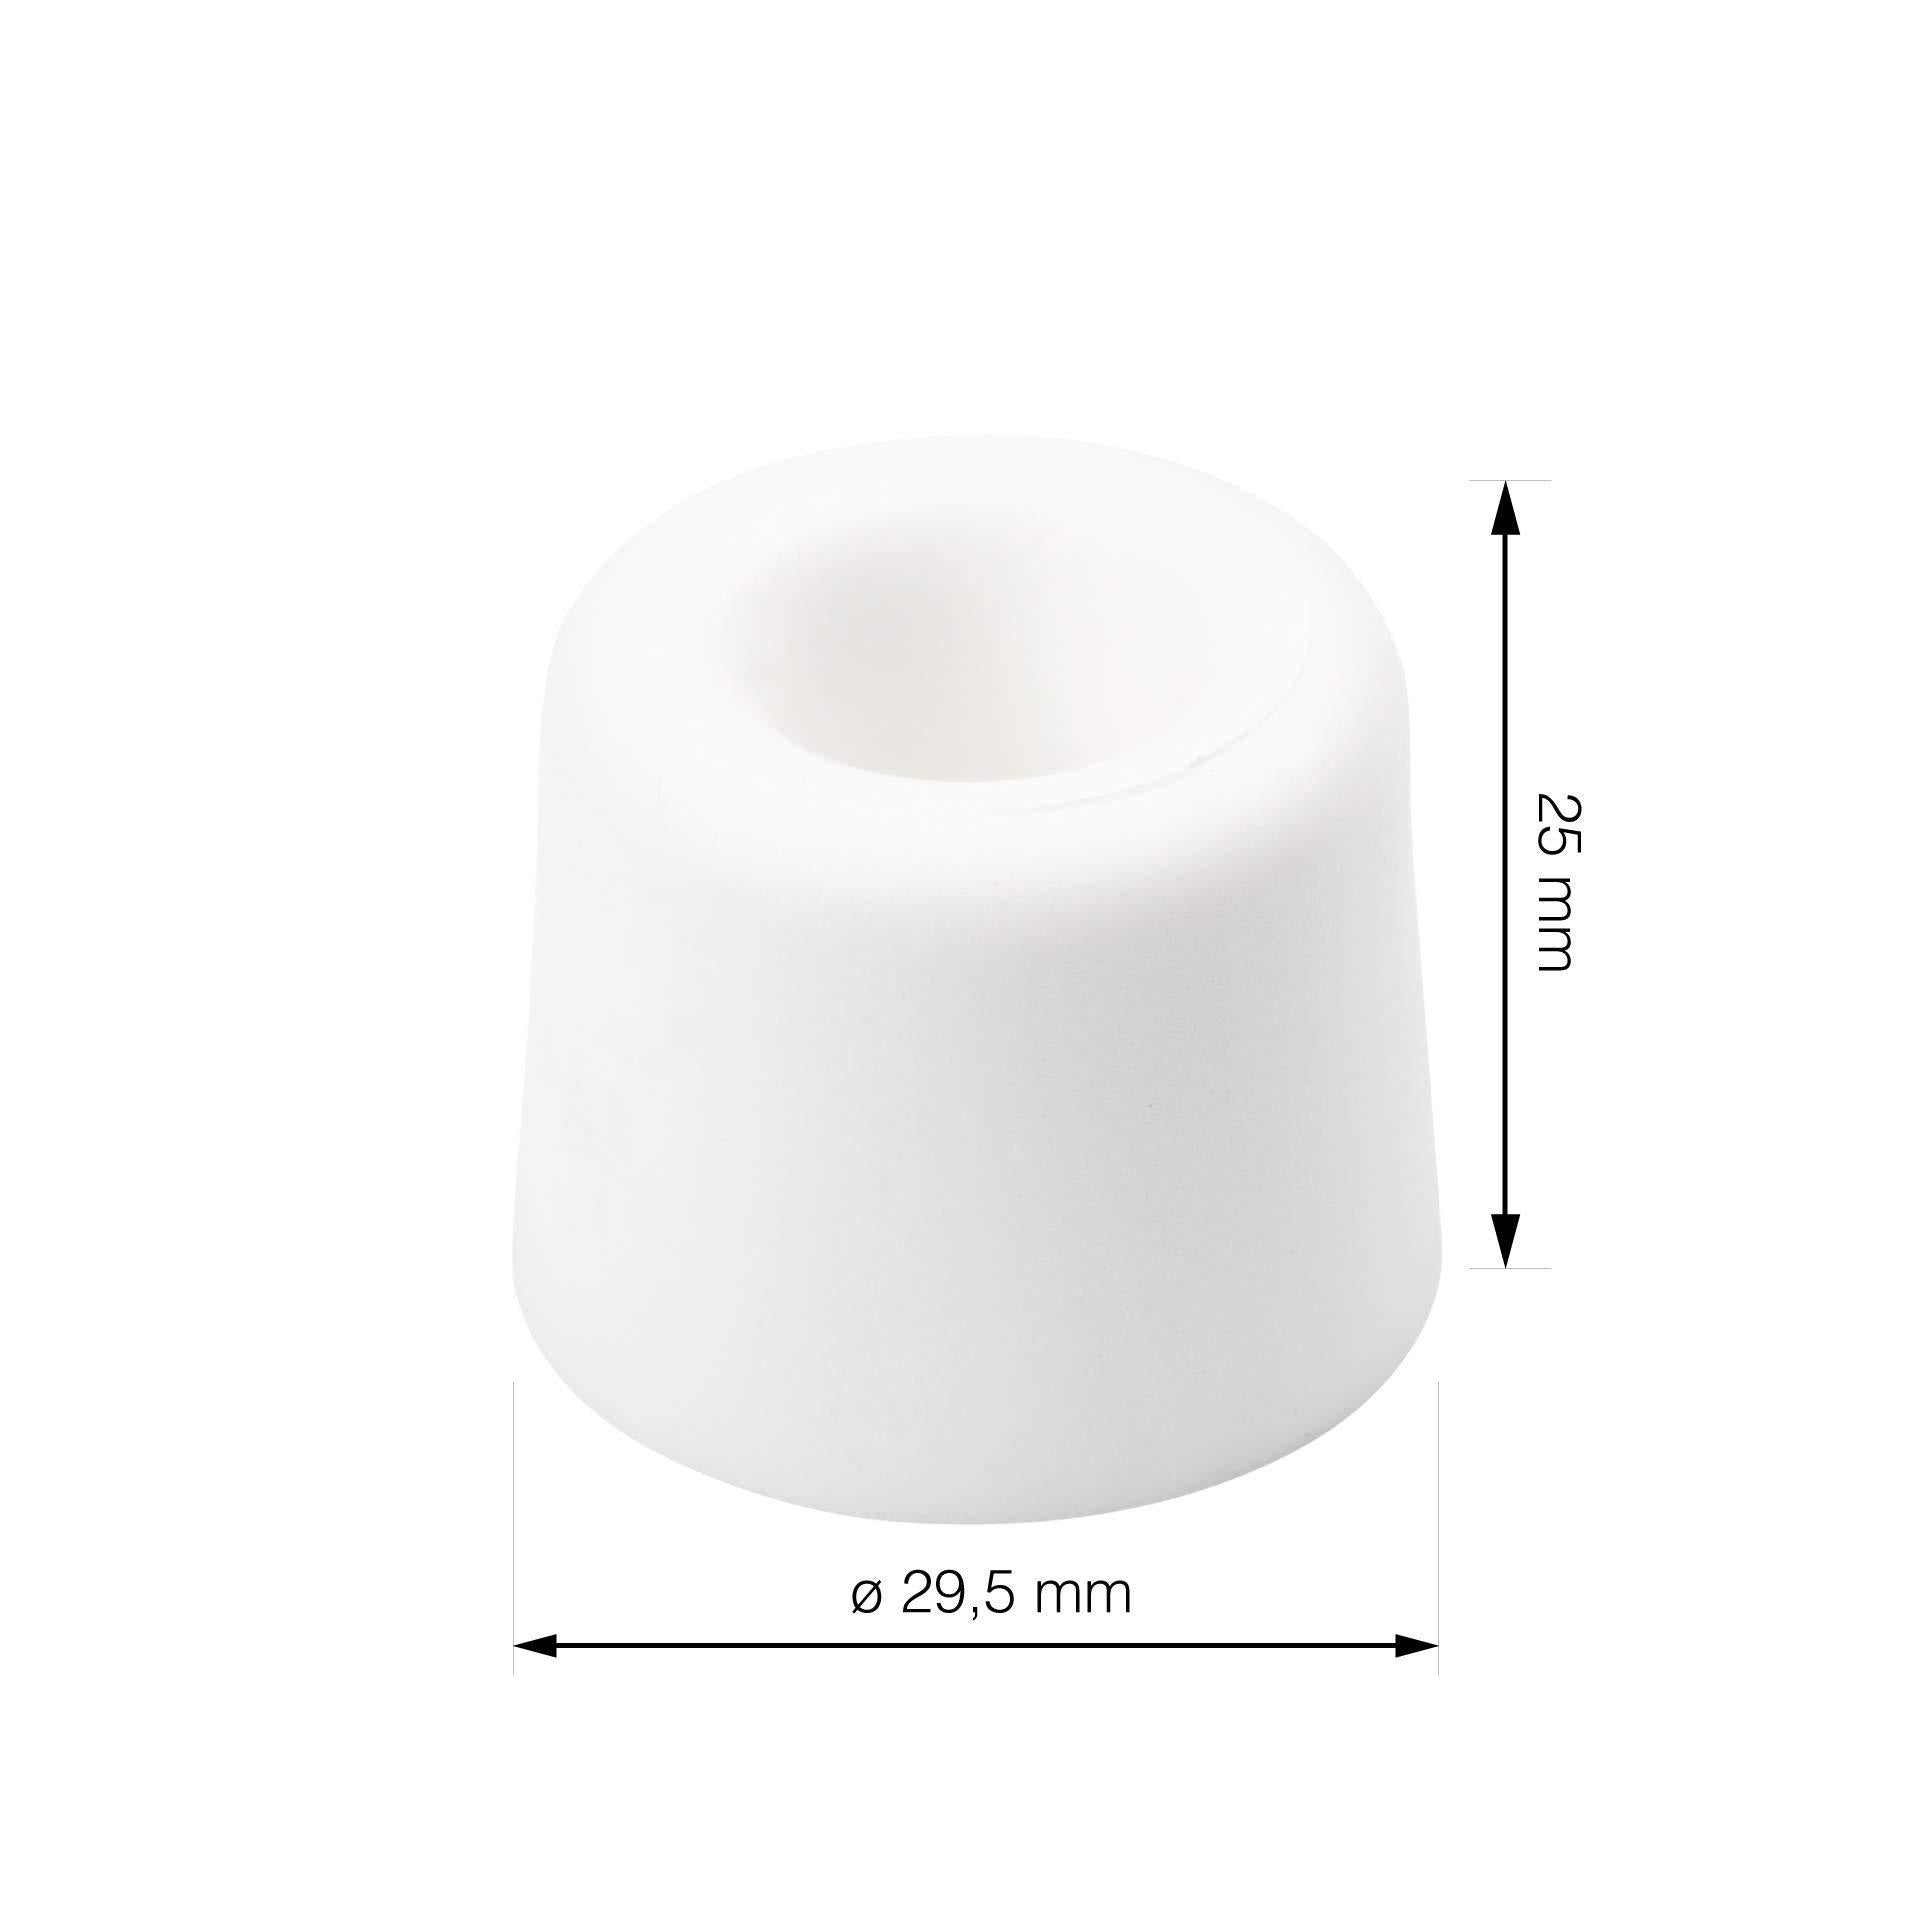 Produktmaße einzelner Türstopper Kunststoff weiß 29,5x25 mm